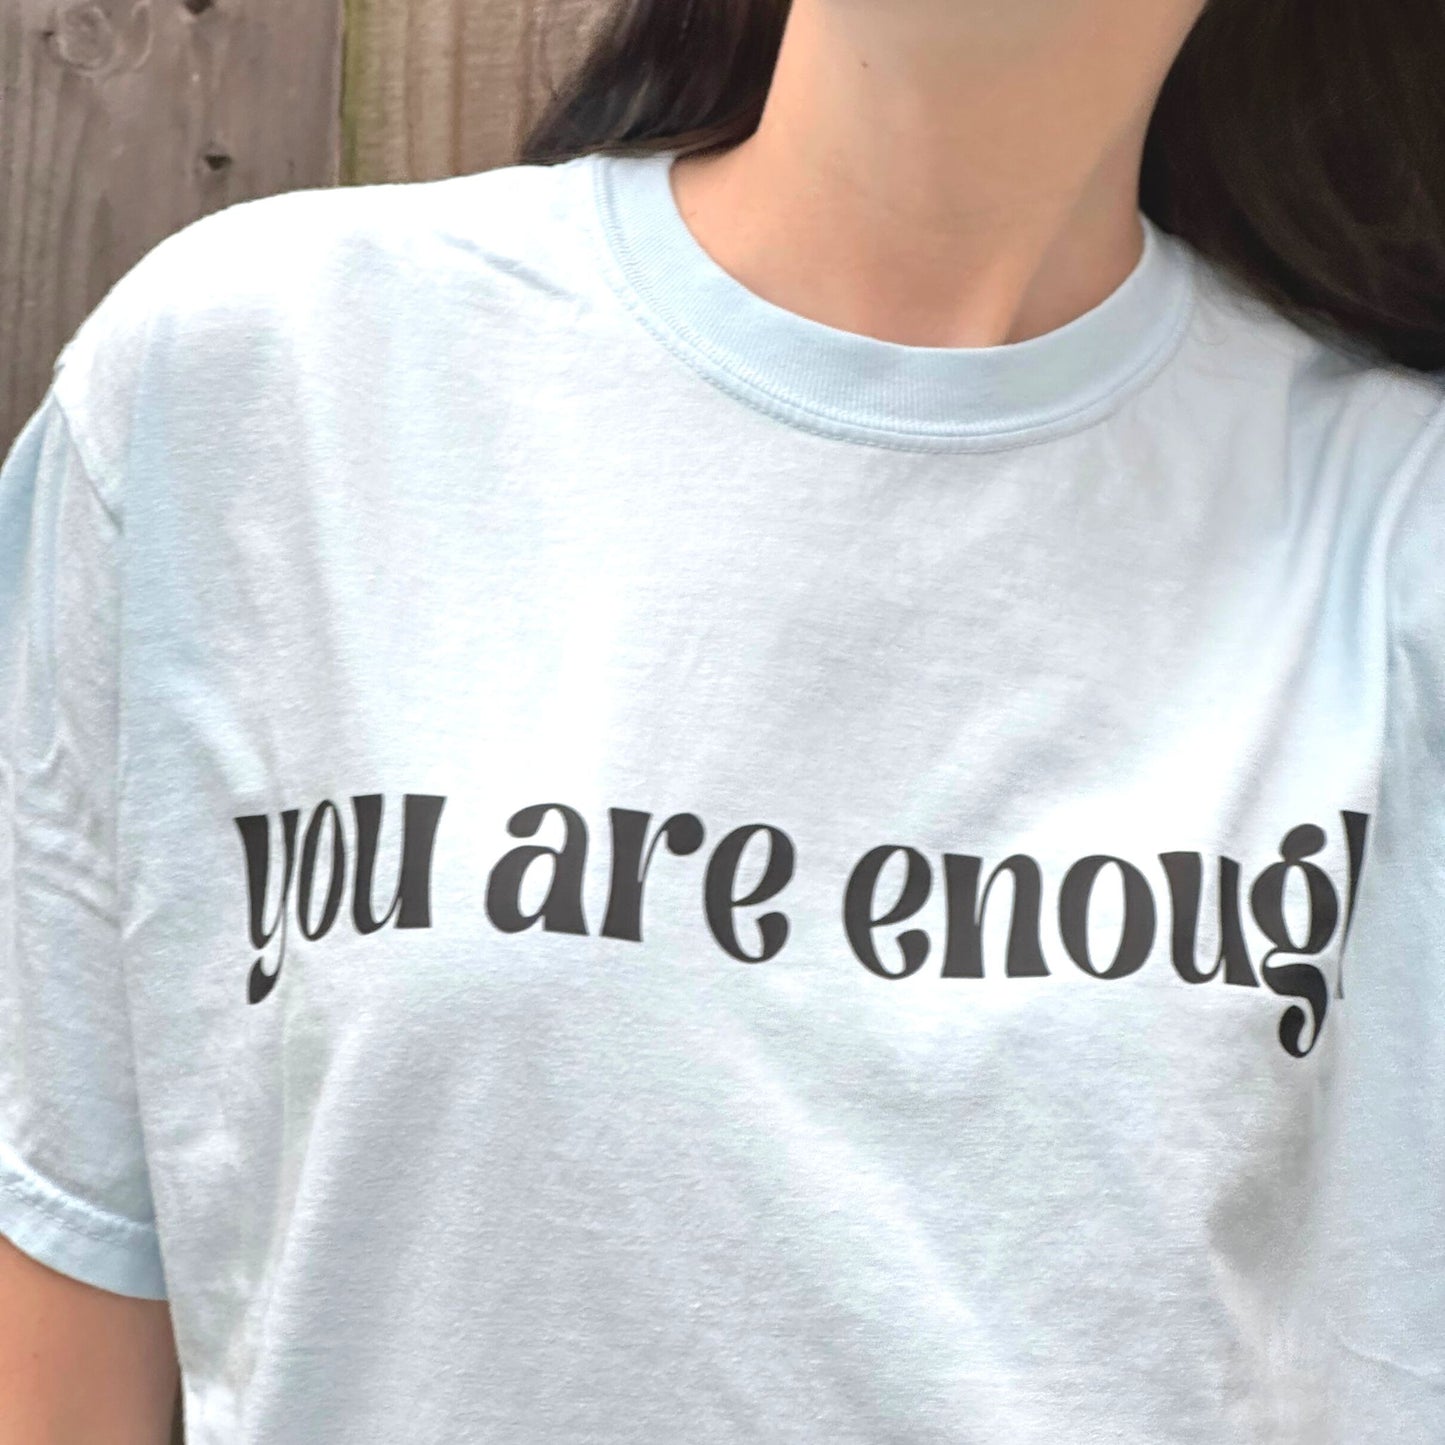 Eres suficiente - Camiseta Comfort Colors